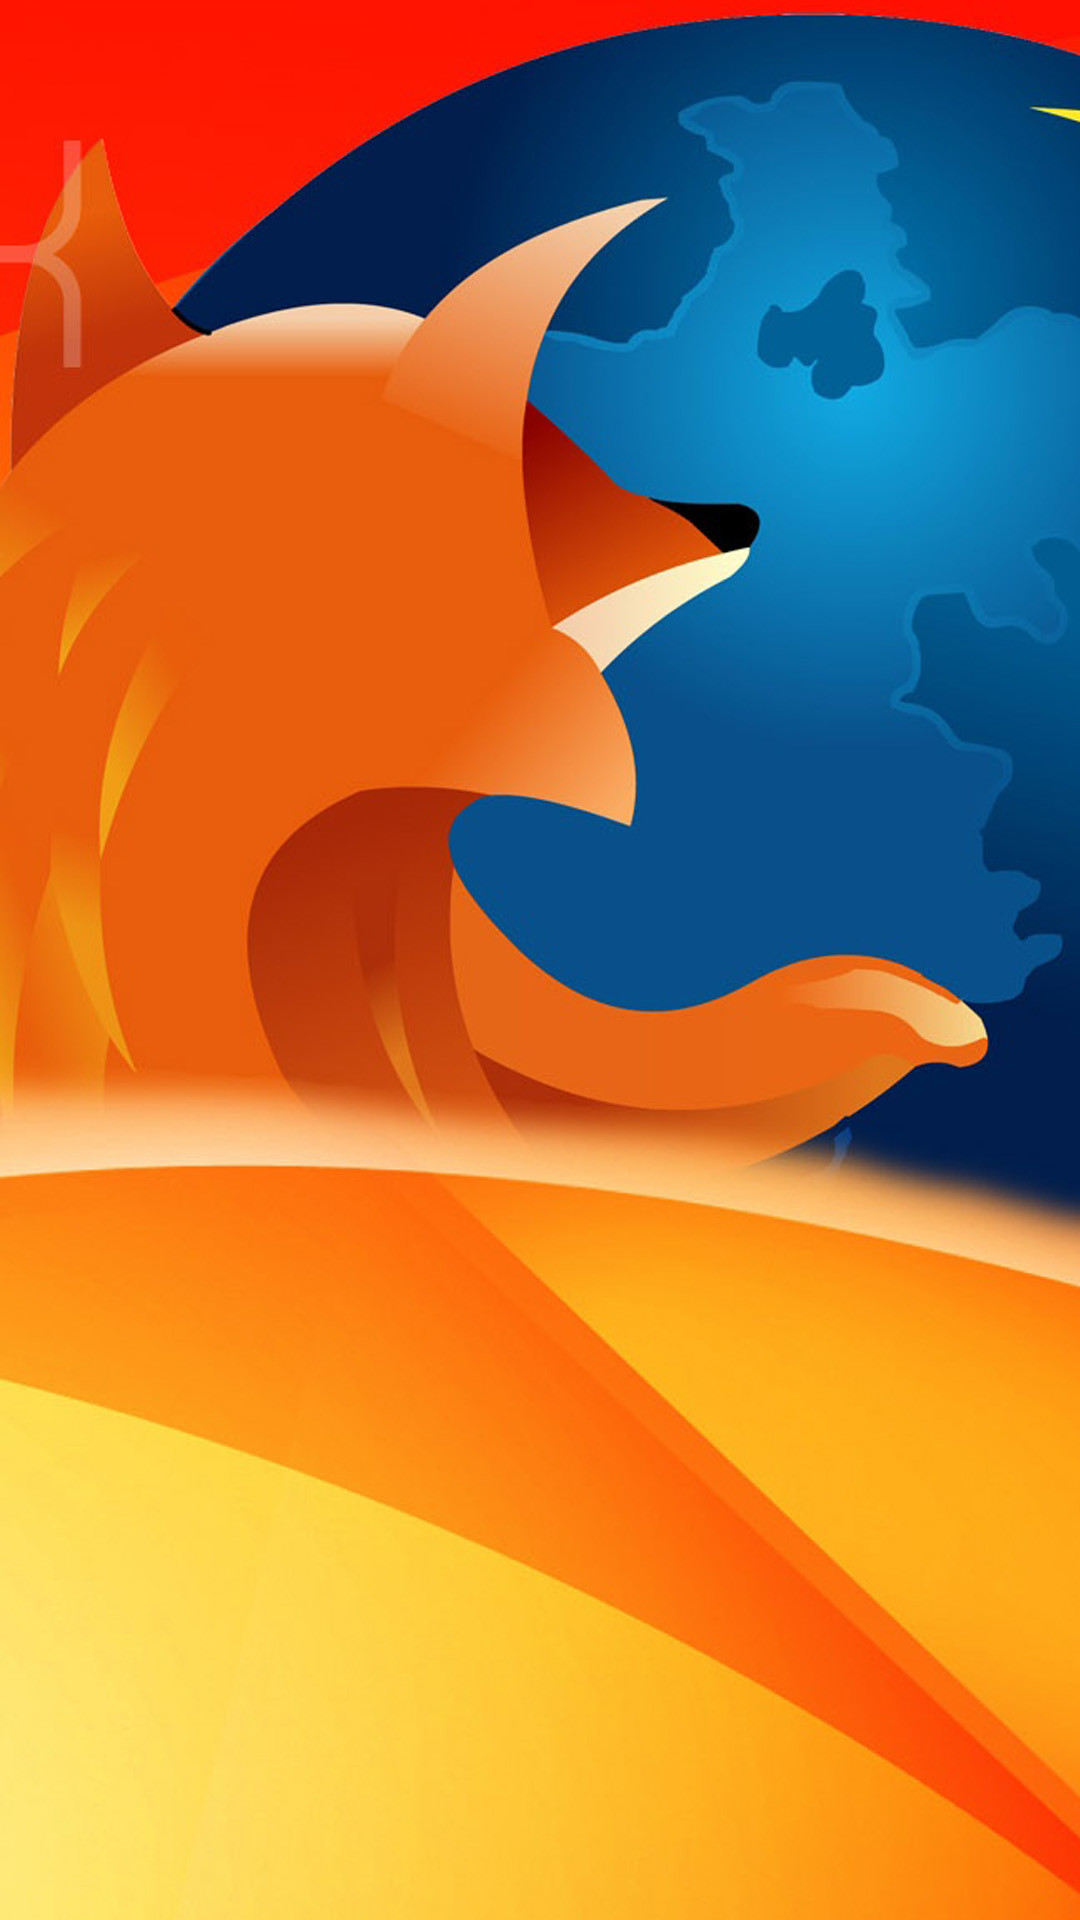 1080x1920 Firefox hd widescreen Galaxy s5 Wallpaper